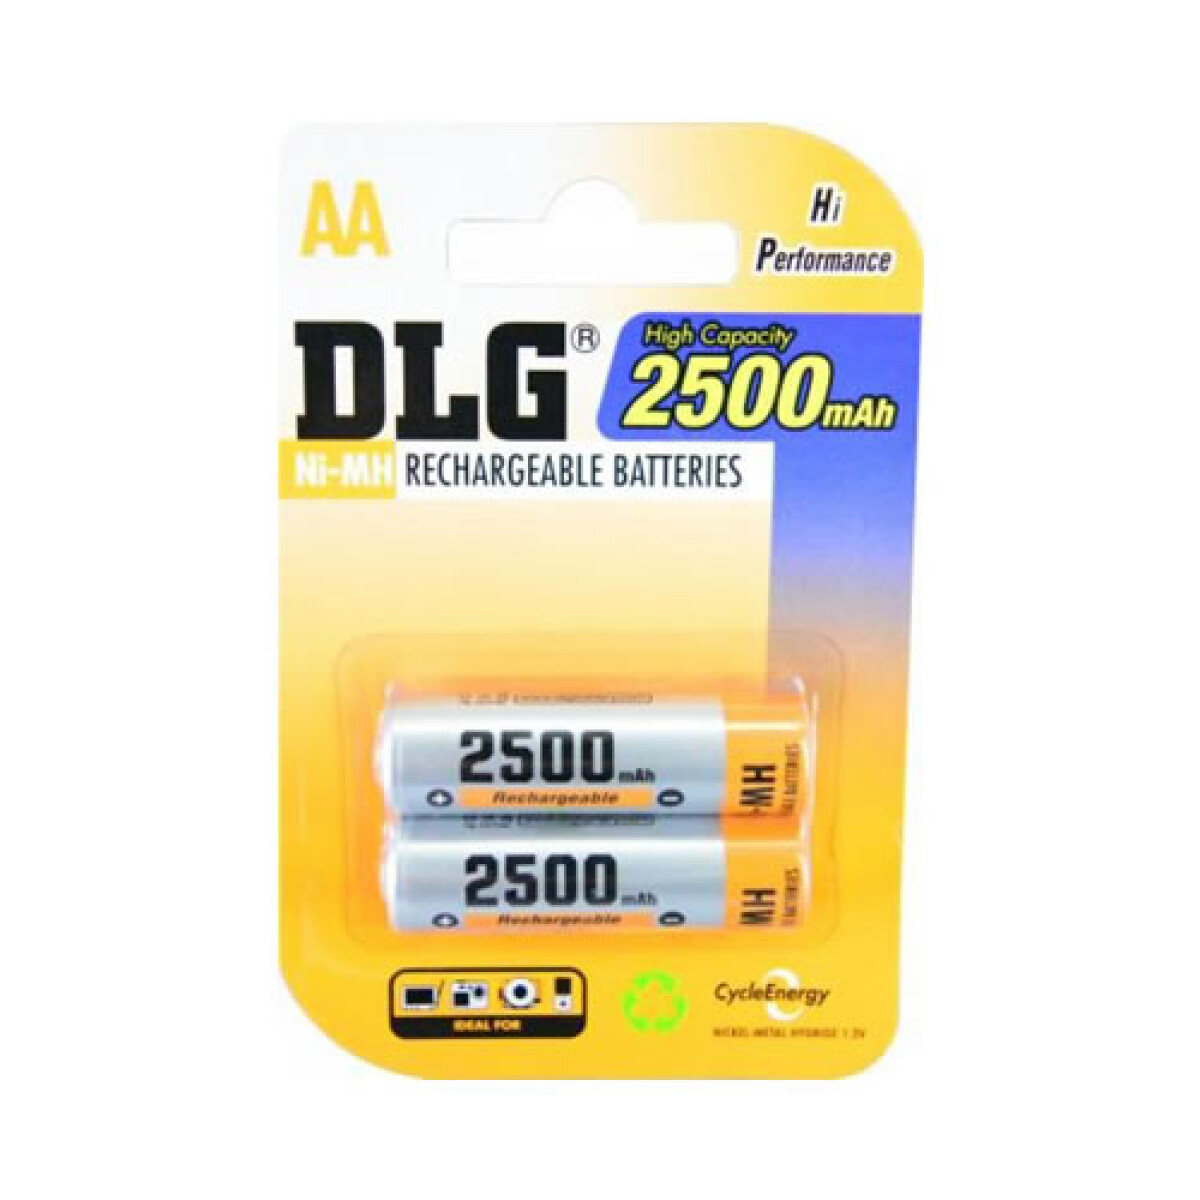 Pila AAA recargable DLG 9000 mAh blister x 2 